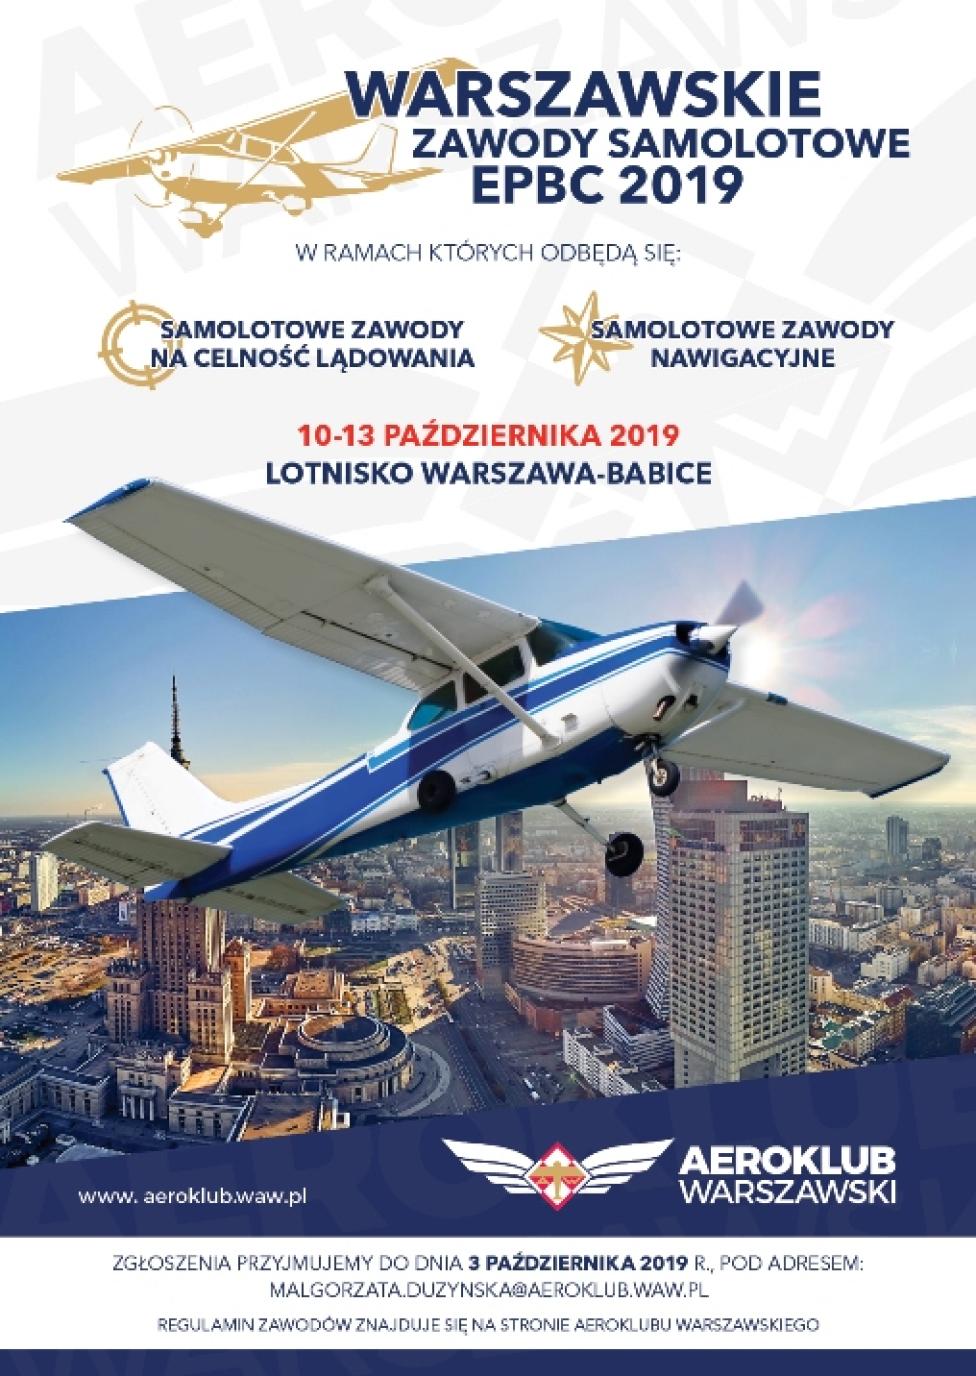 Warszawskie Zawody Samolotowe EPBC 2019 (fot. aeroklub.waw.pl)